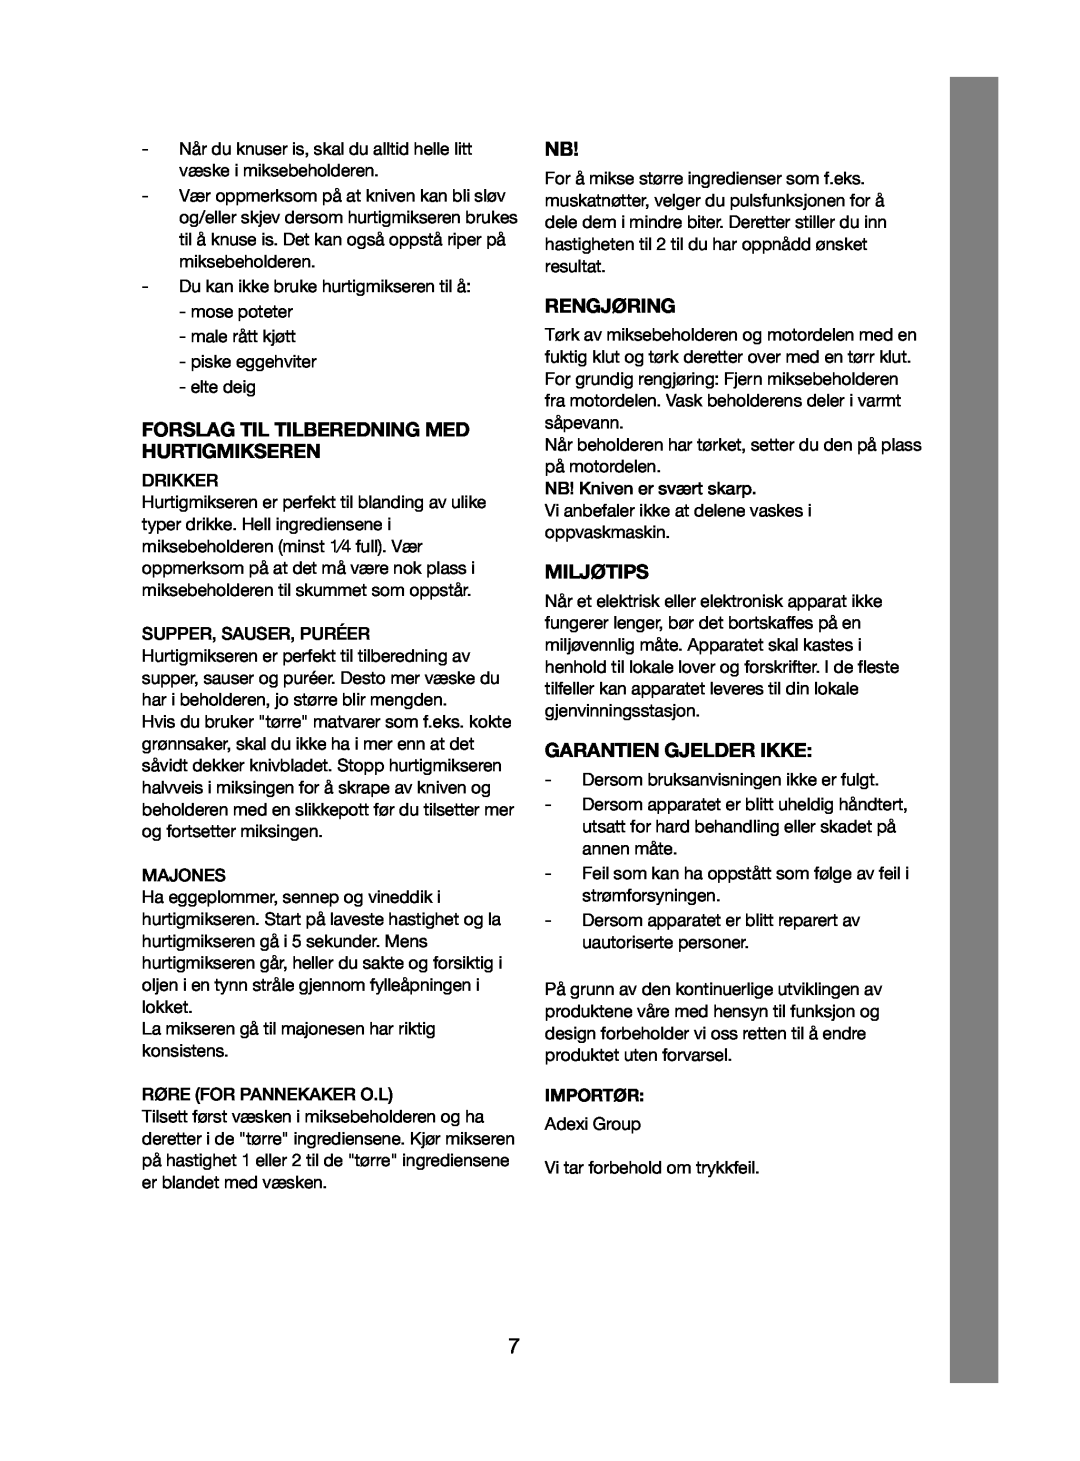 Melissa 246-001, 246-012 manual Forslag Til Tilberedning Med Hurtigmikseren, Rengjøring, Miljøtips, Garantien Gjelder Ikke 